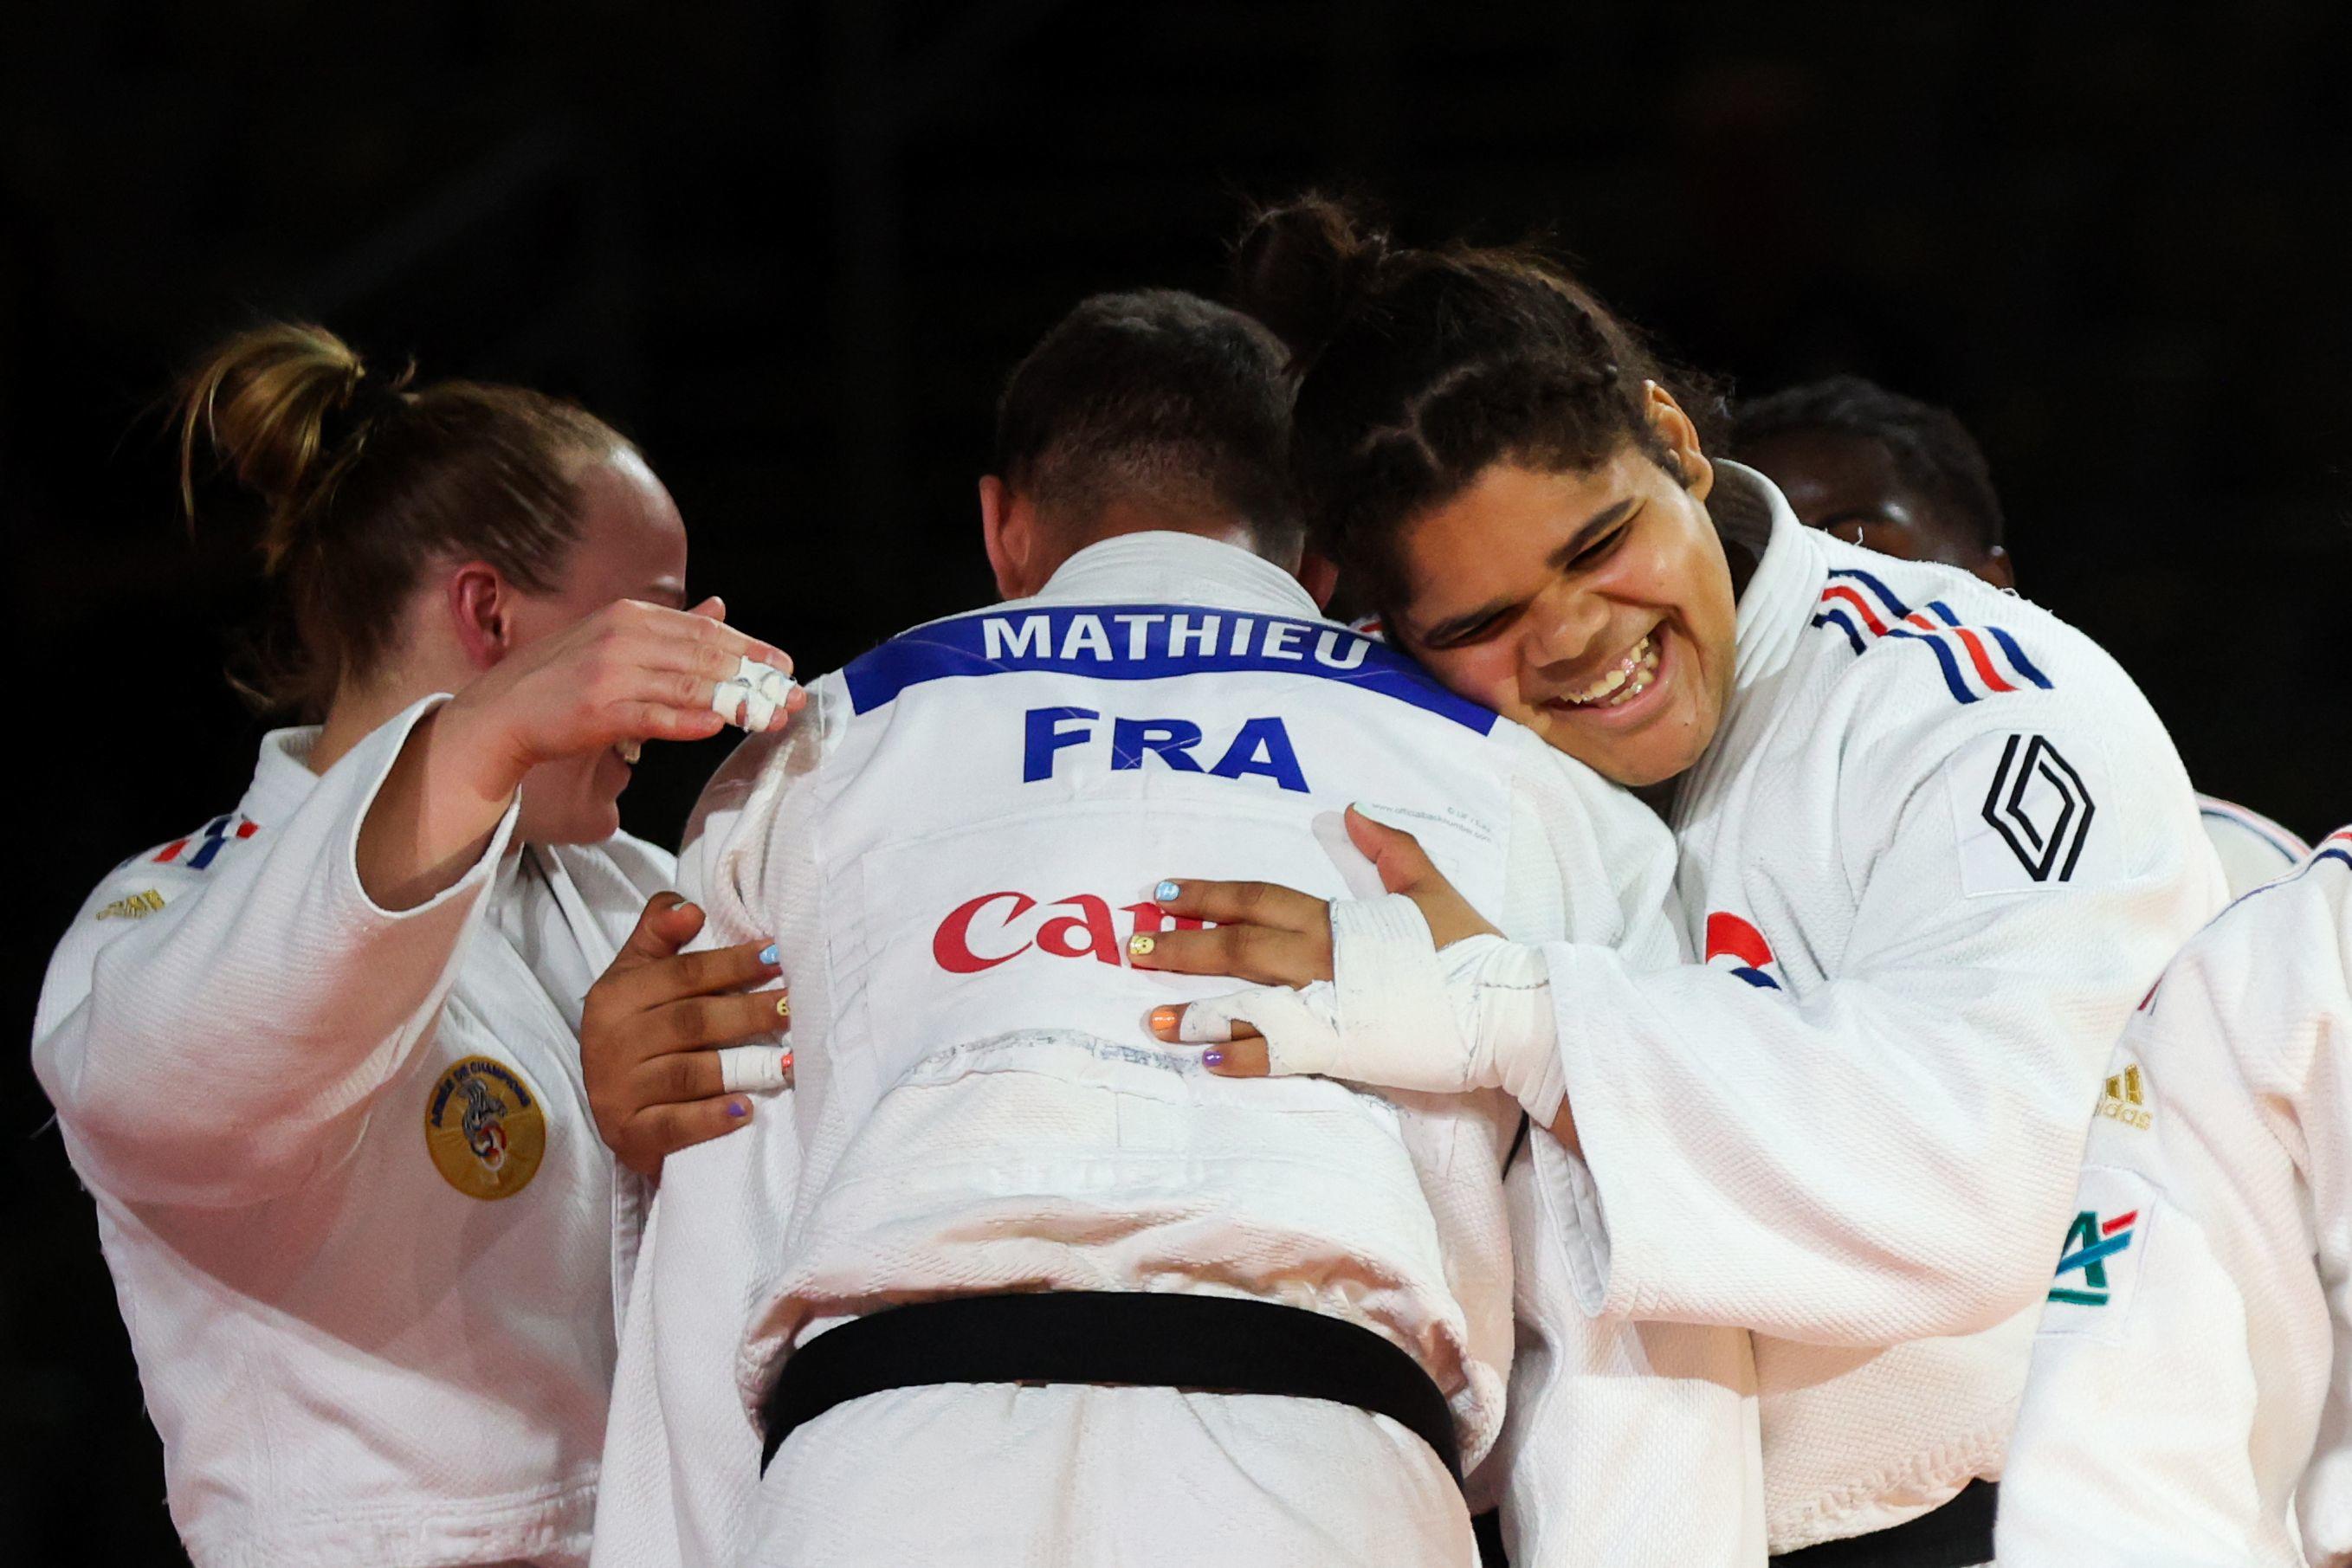 L'équipe de France a remporté la médaille d'or de l'épreuve par équipe mixte. AFP/Damir SENCAR